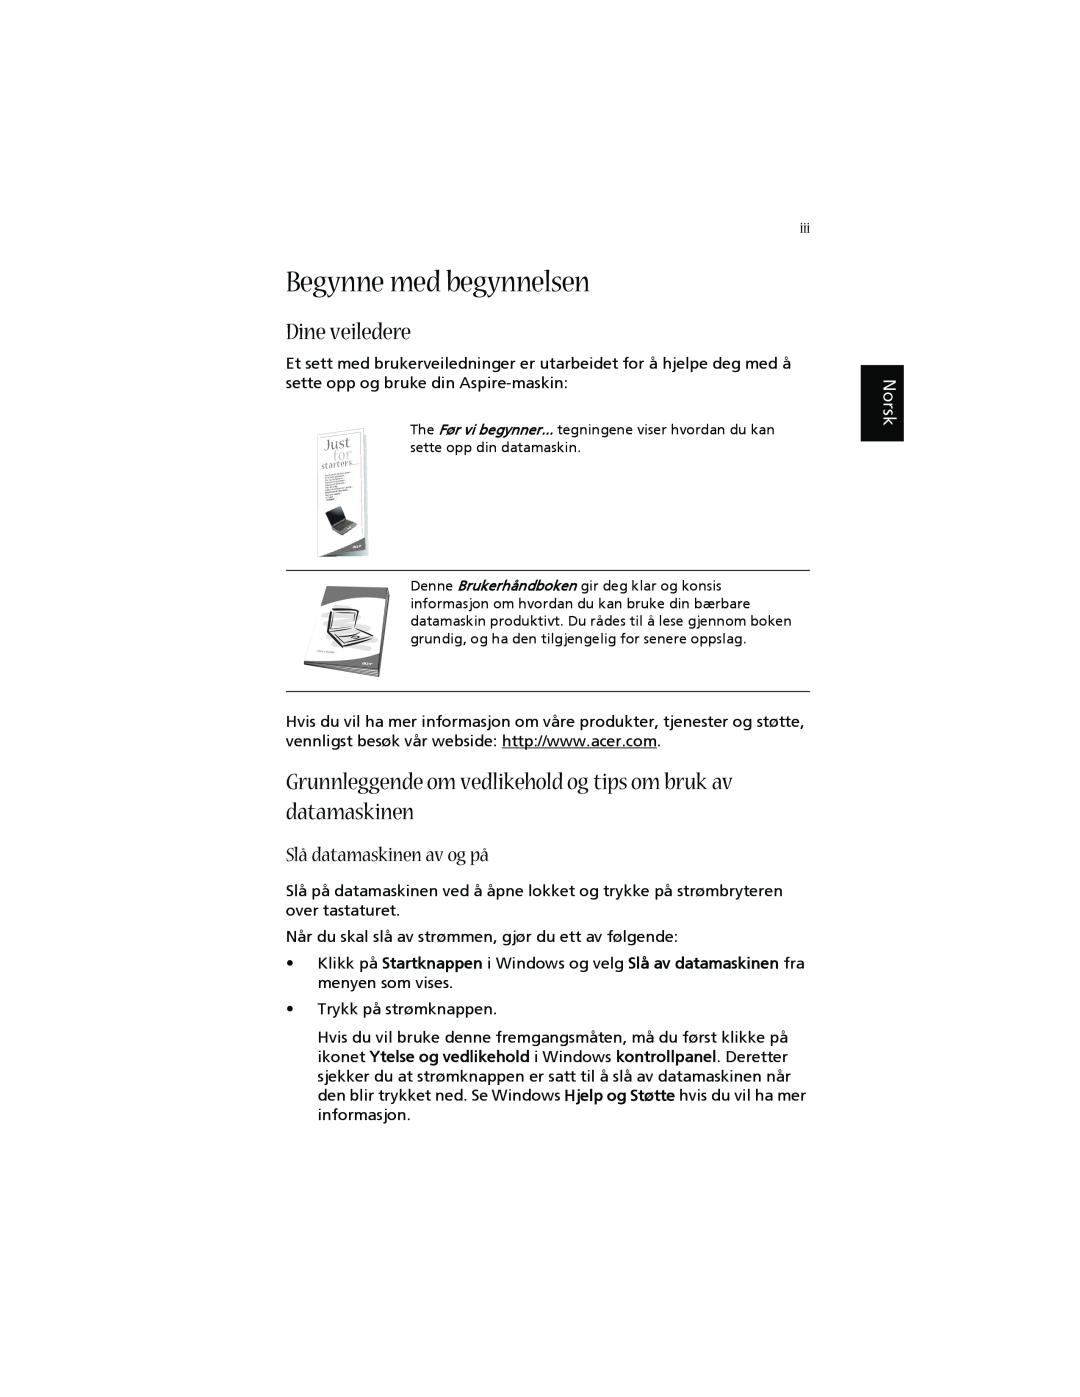 Acer 1660 Begynne med begynnelsen, Dine veiledere, Grunnleggende om vedlikehold og tips om bruk av datamaskinen, Norsk 